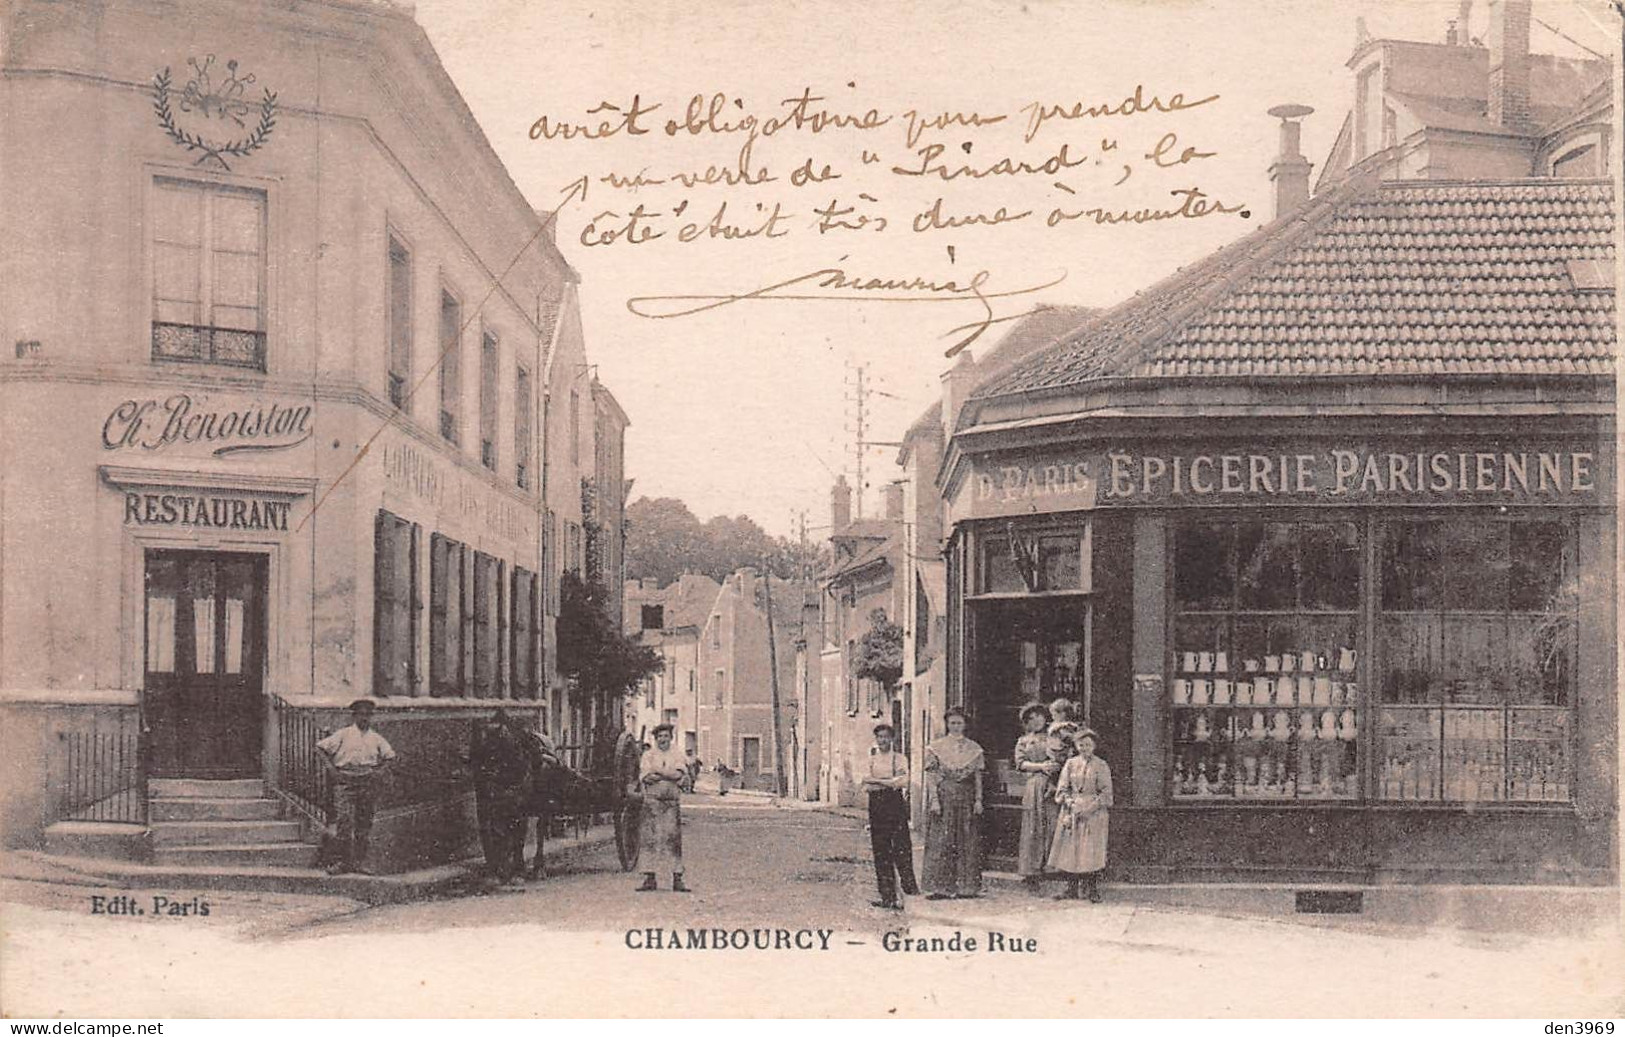 CHAMBOURCY (Yvelines) - Grande Rue - Restaurant Benoiston, Epicerie Parisienne, Attelage Cheval - Voyagé 1917 (2 Scans) - Chambourcy